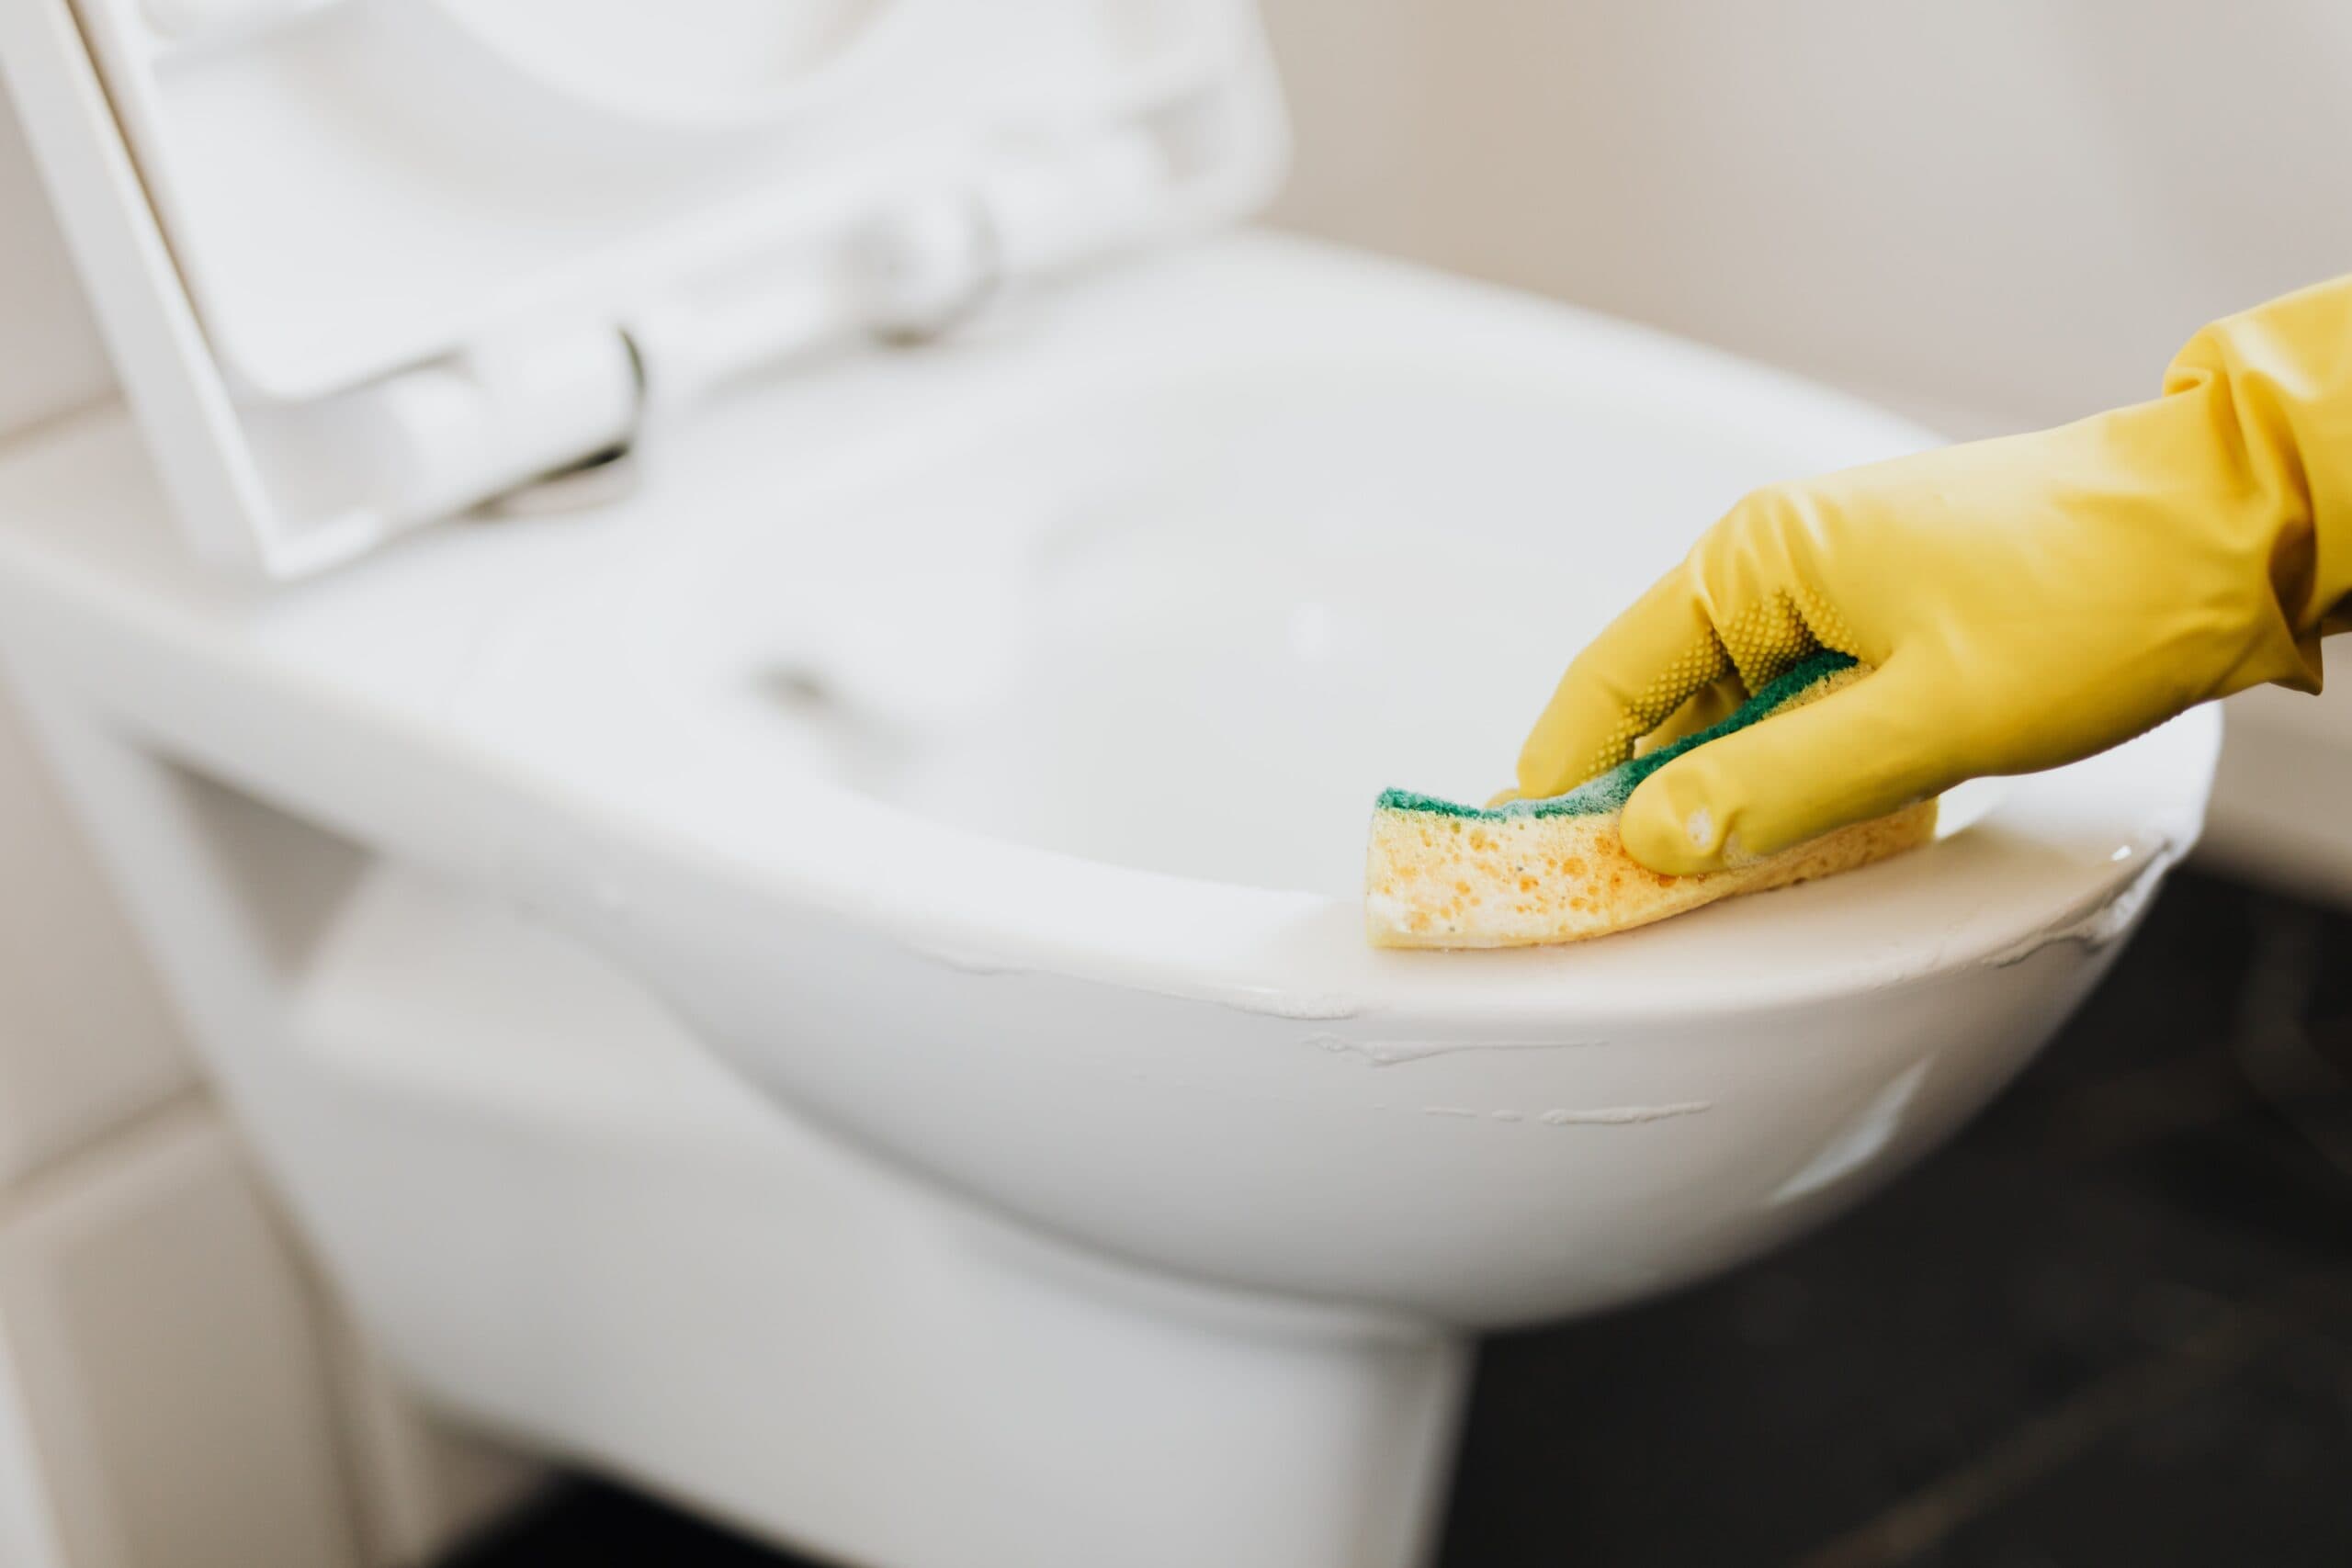 Entretenir ses WC est très important afin d'éviter les possibles bouchons. En effet, si la cuvette de vos toilettes n'est pas régulièrement nettoyer et récurée, ils se peut que cela engendre à la longue des toilettes bouchées.